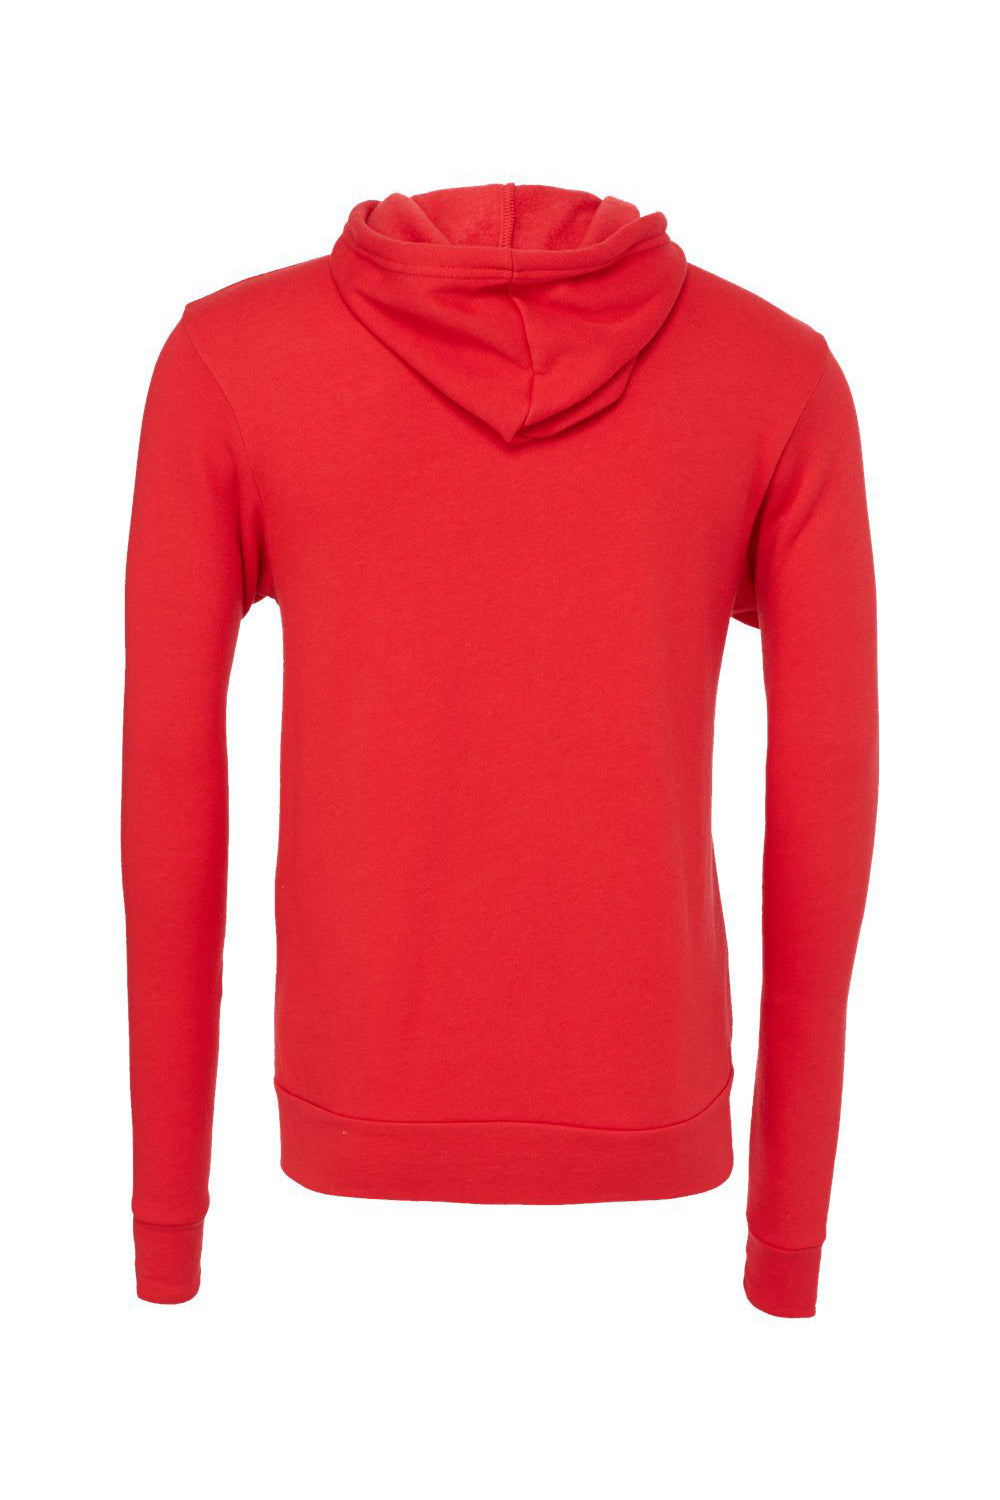 Bella + Canvas BC3739/3739 Mens Fleece Full Zip Hooded Sweatshirt Hoodie Red Flat Back